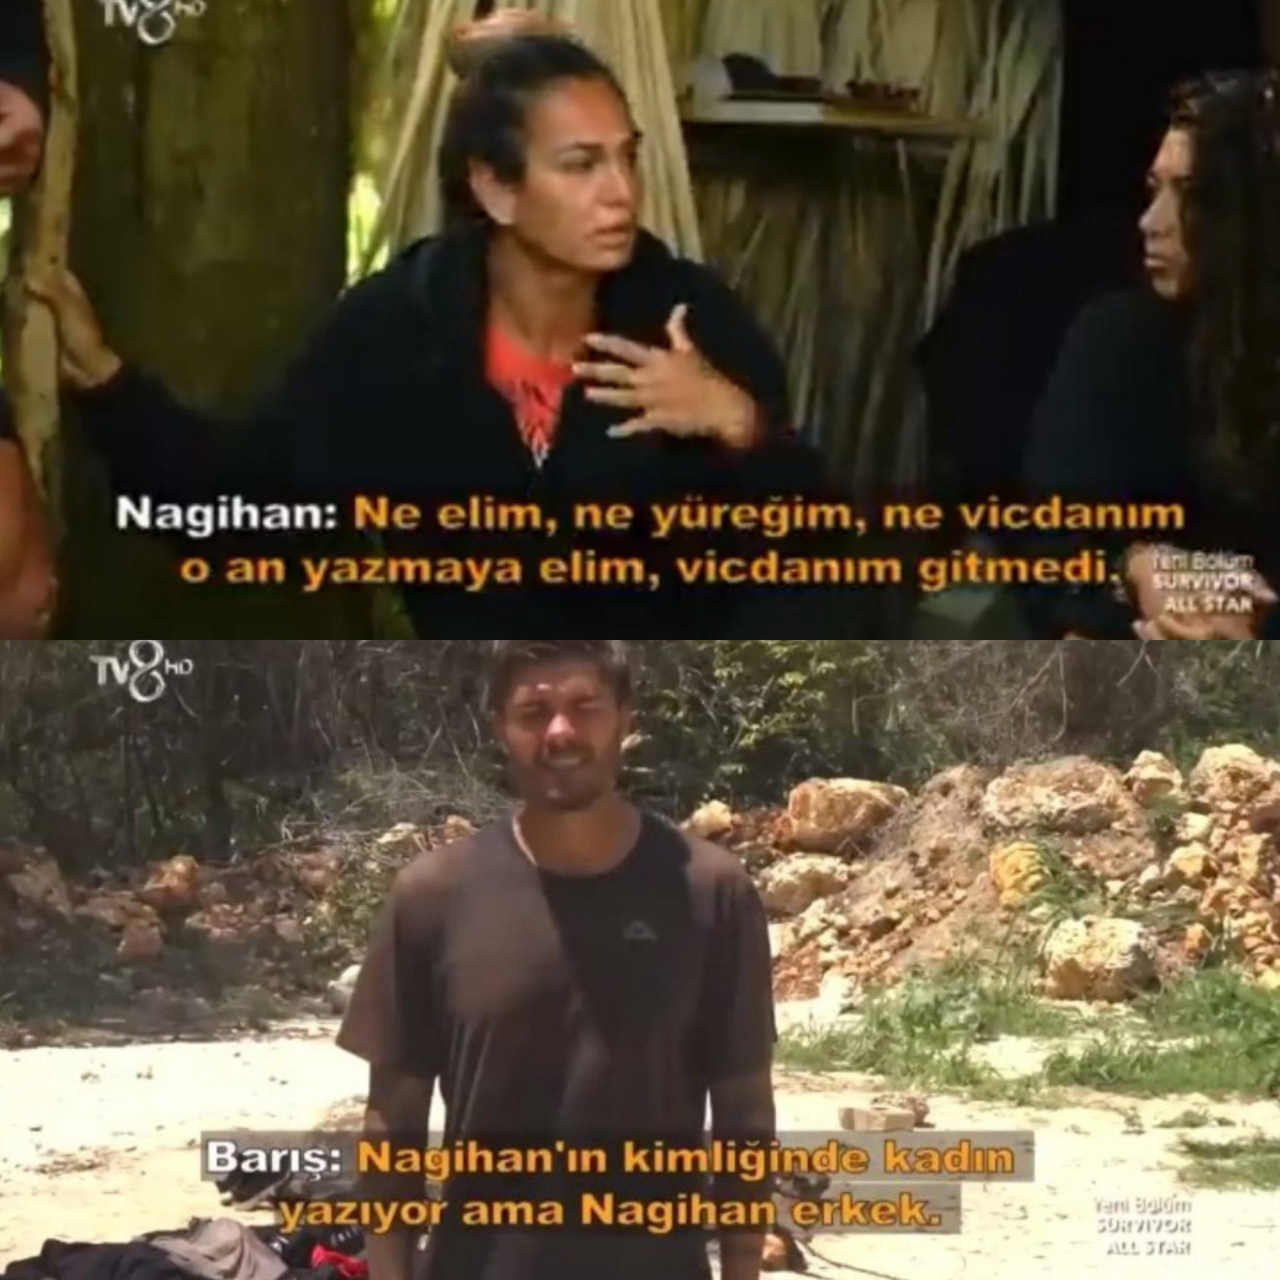 Survivor All Star'da yokluk adasına giden Barış Murat Yağcı'nın sözleri tepki çekti! İzleyenler şaştı kaldı! Nagihan hakkında söyledikleri ağızları açık bıraktı!